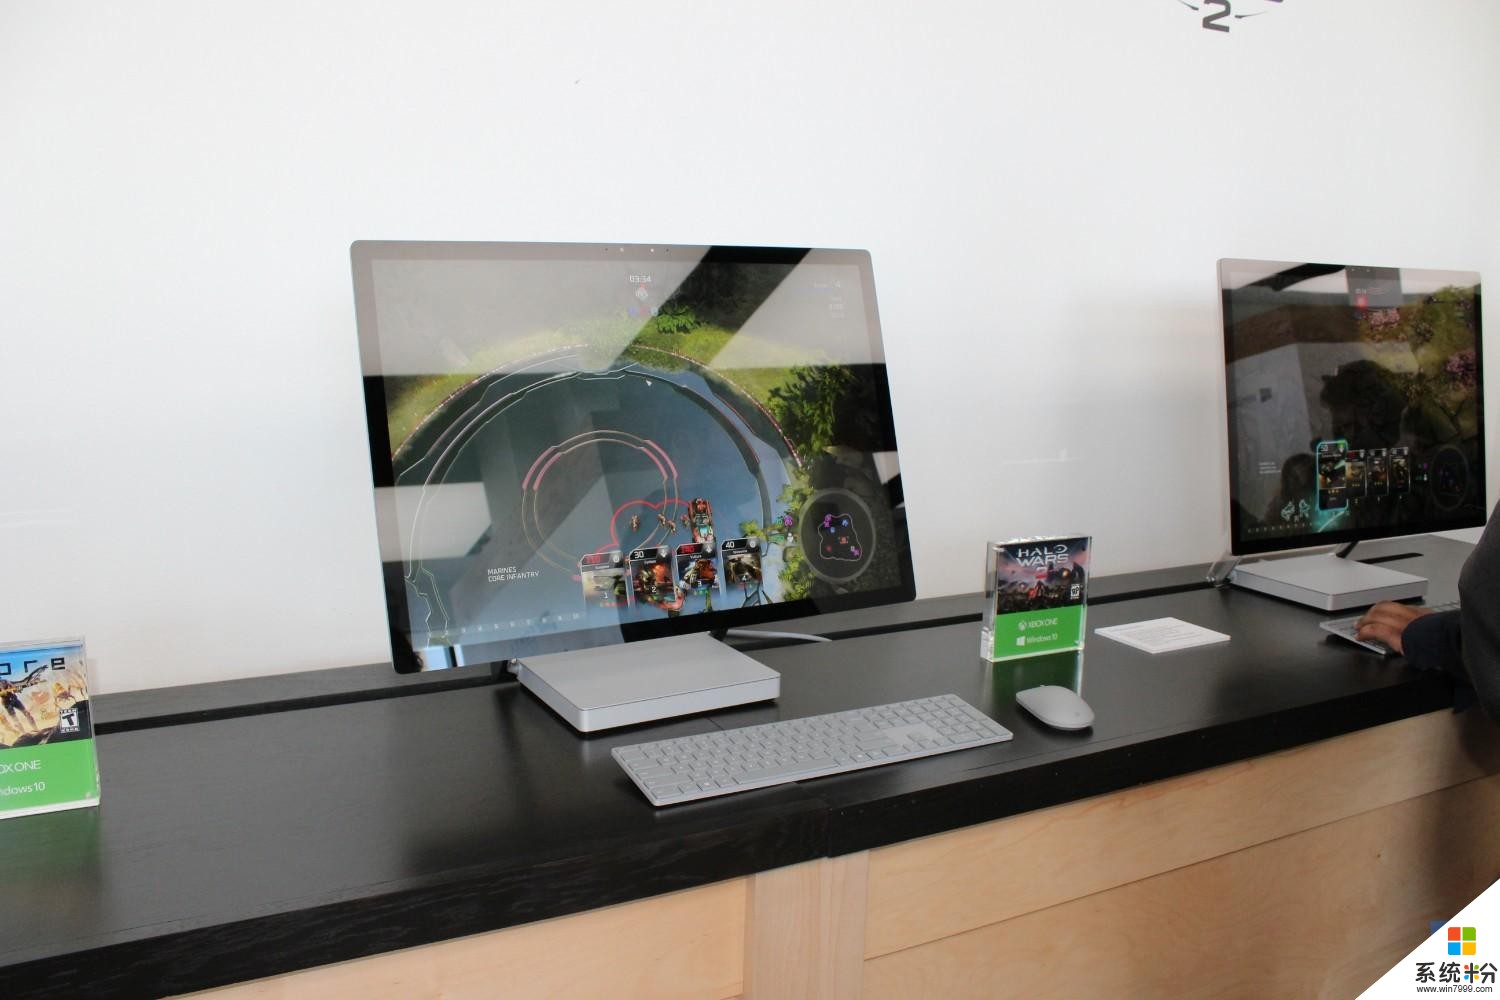 微软Surface Studio斩获IDSA设计金奖, Xbox One S获铜奖